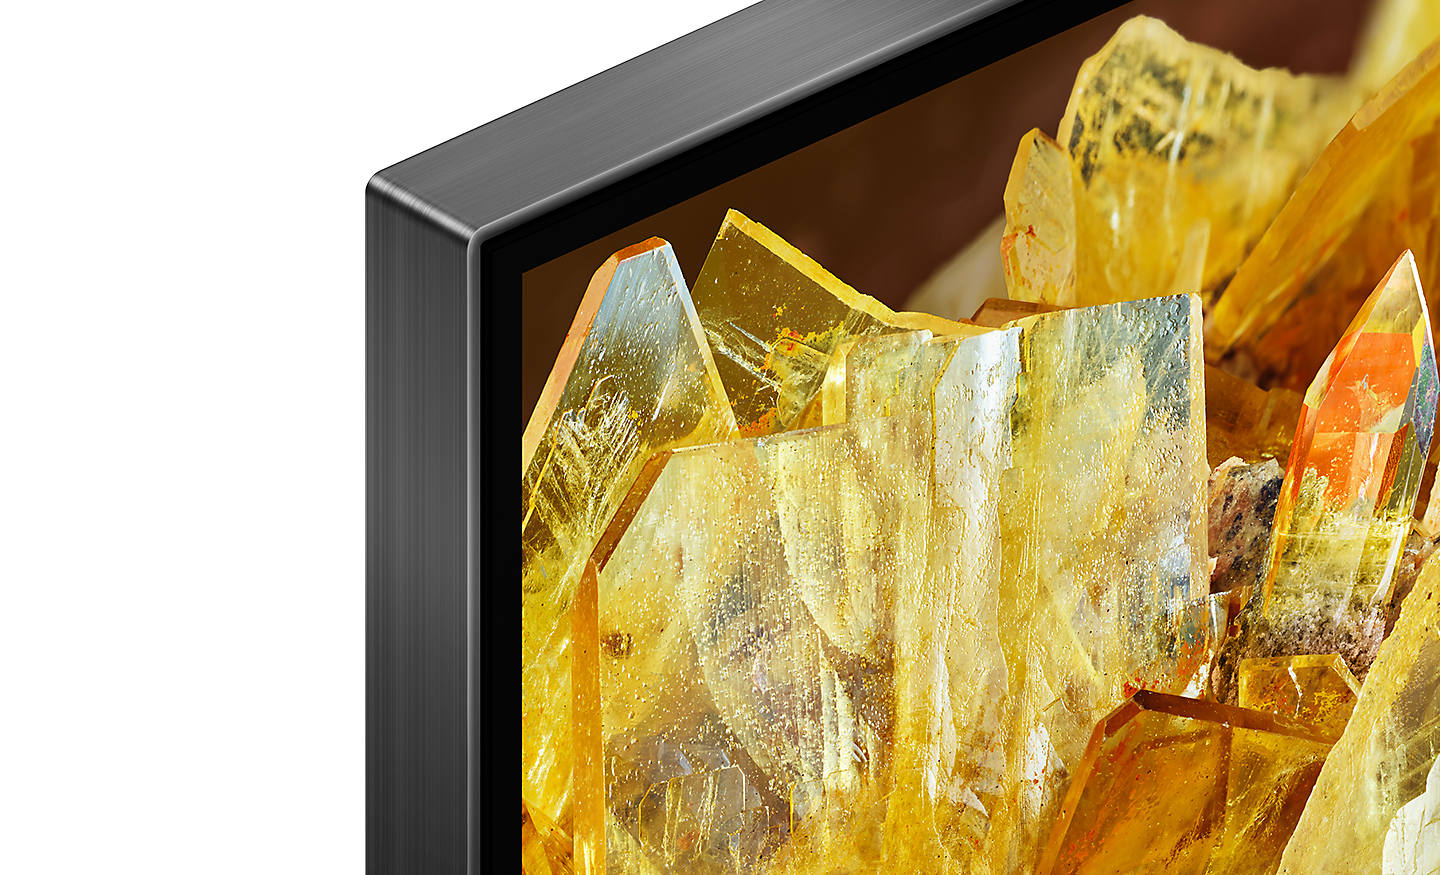 Esquina de la televisión con cristales dorados en la pantalla